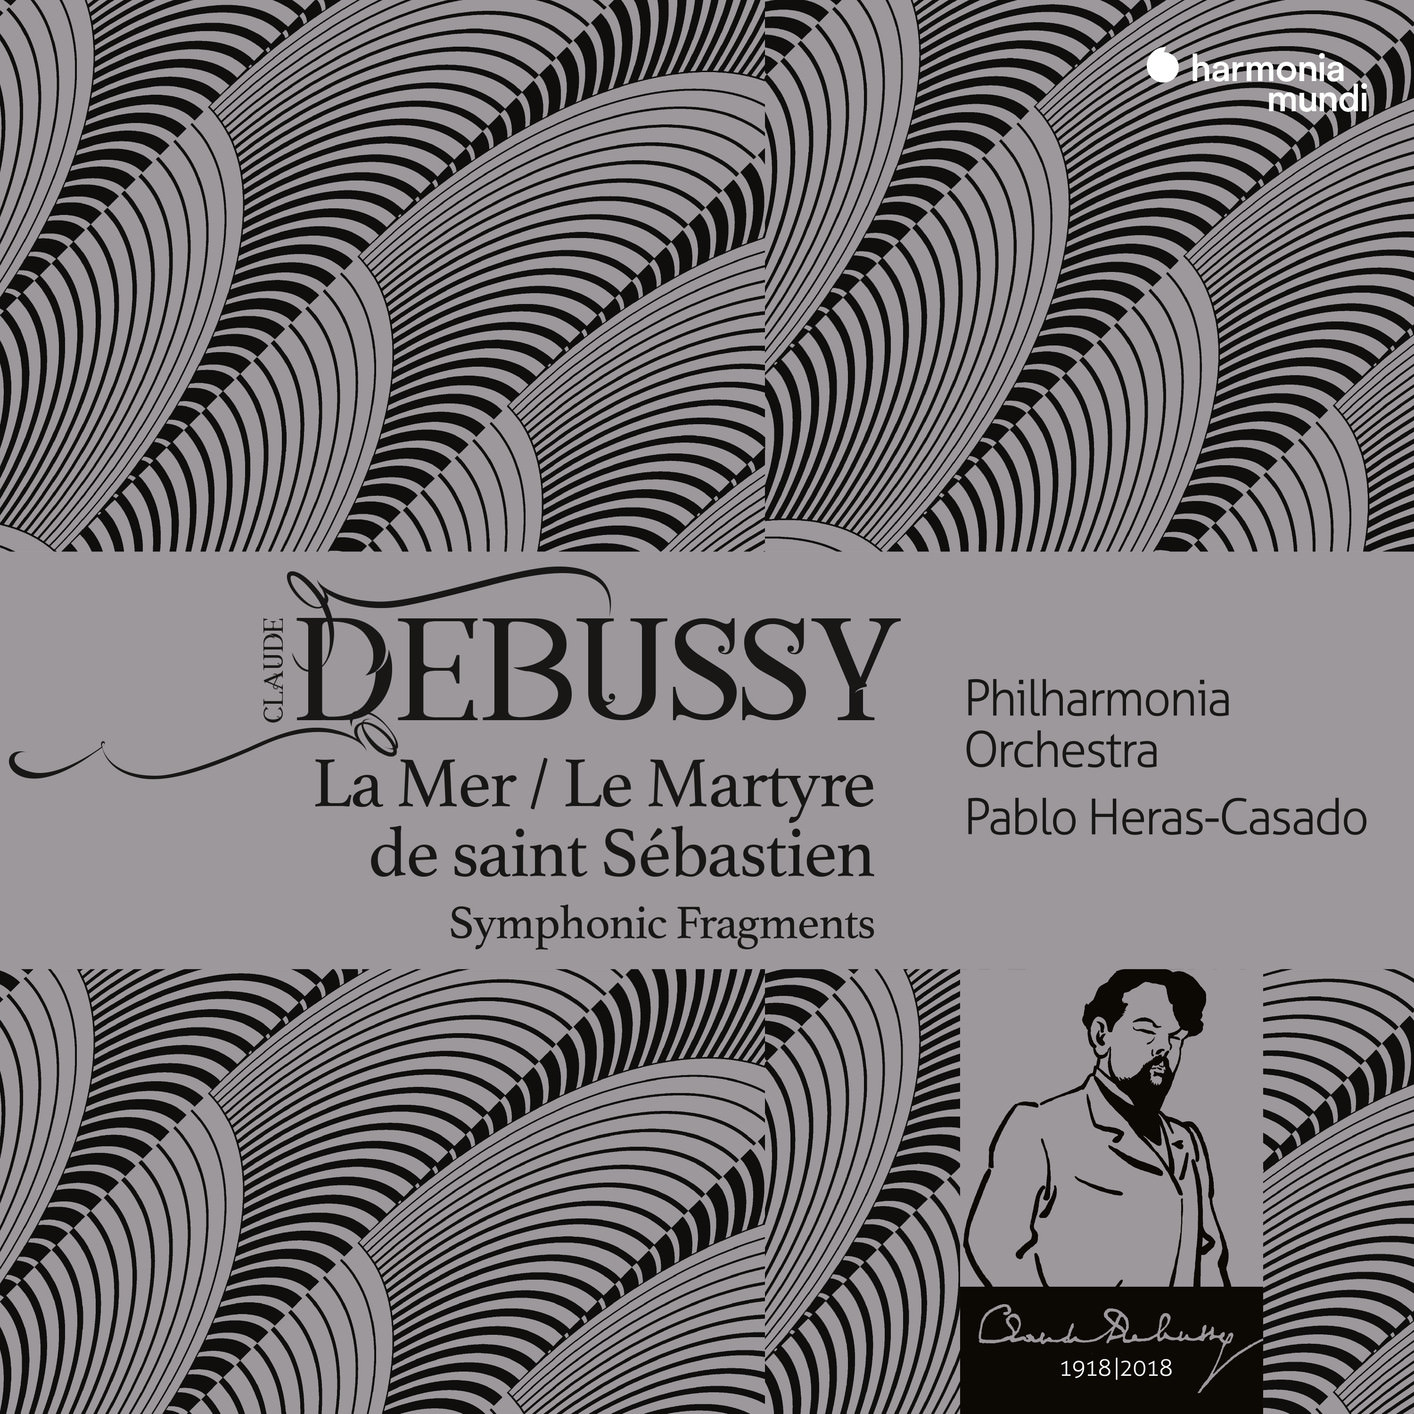 Philharmonia Orchestra & Pablo Heras-Casado - Debussy: La Mer, Le Martyre de saint Sebastien (2018) [FLAC 24bit/48kHz]